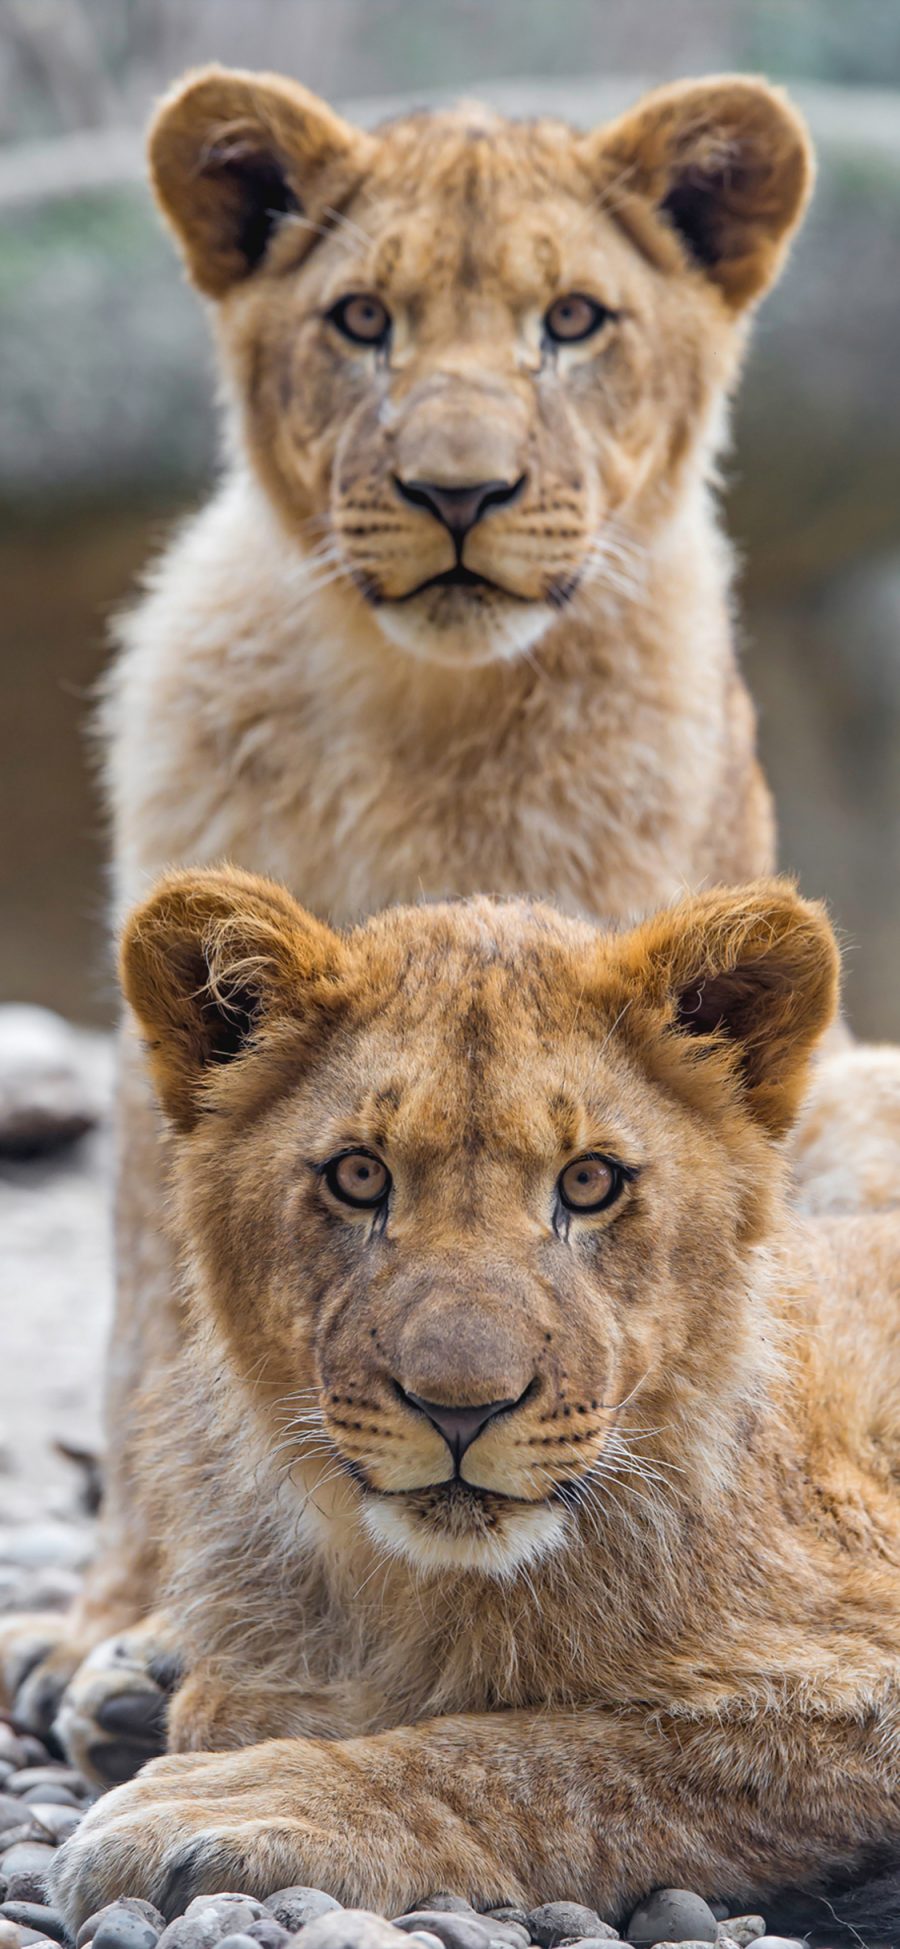 [2436×1125]狮子 动物 凶猛 森林之王 苹果手机壁纸图片